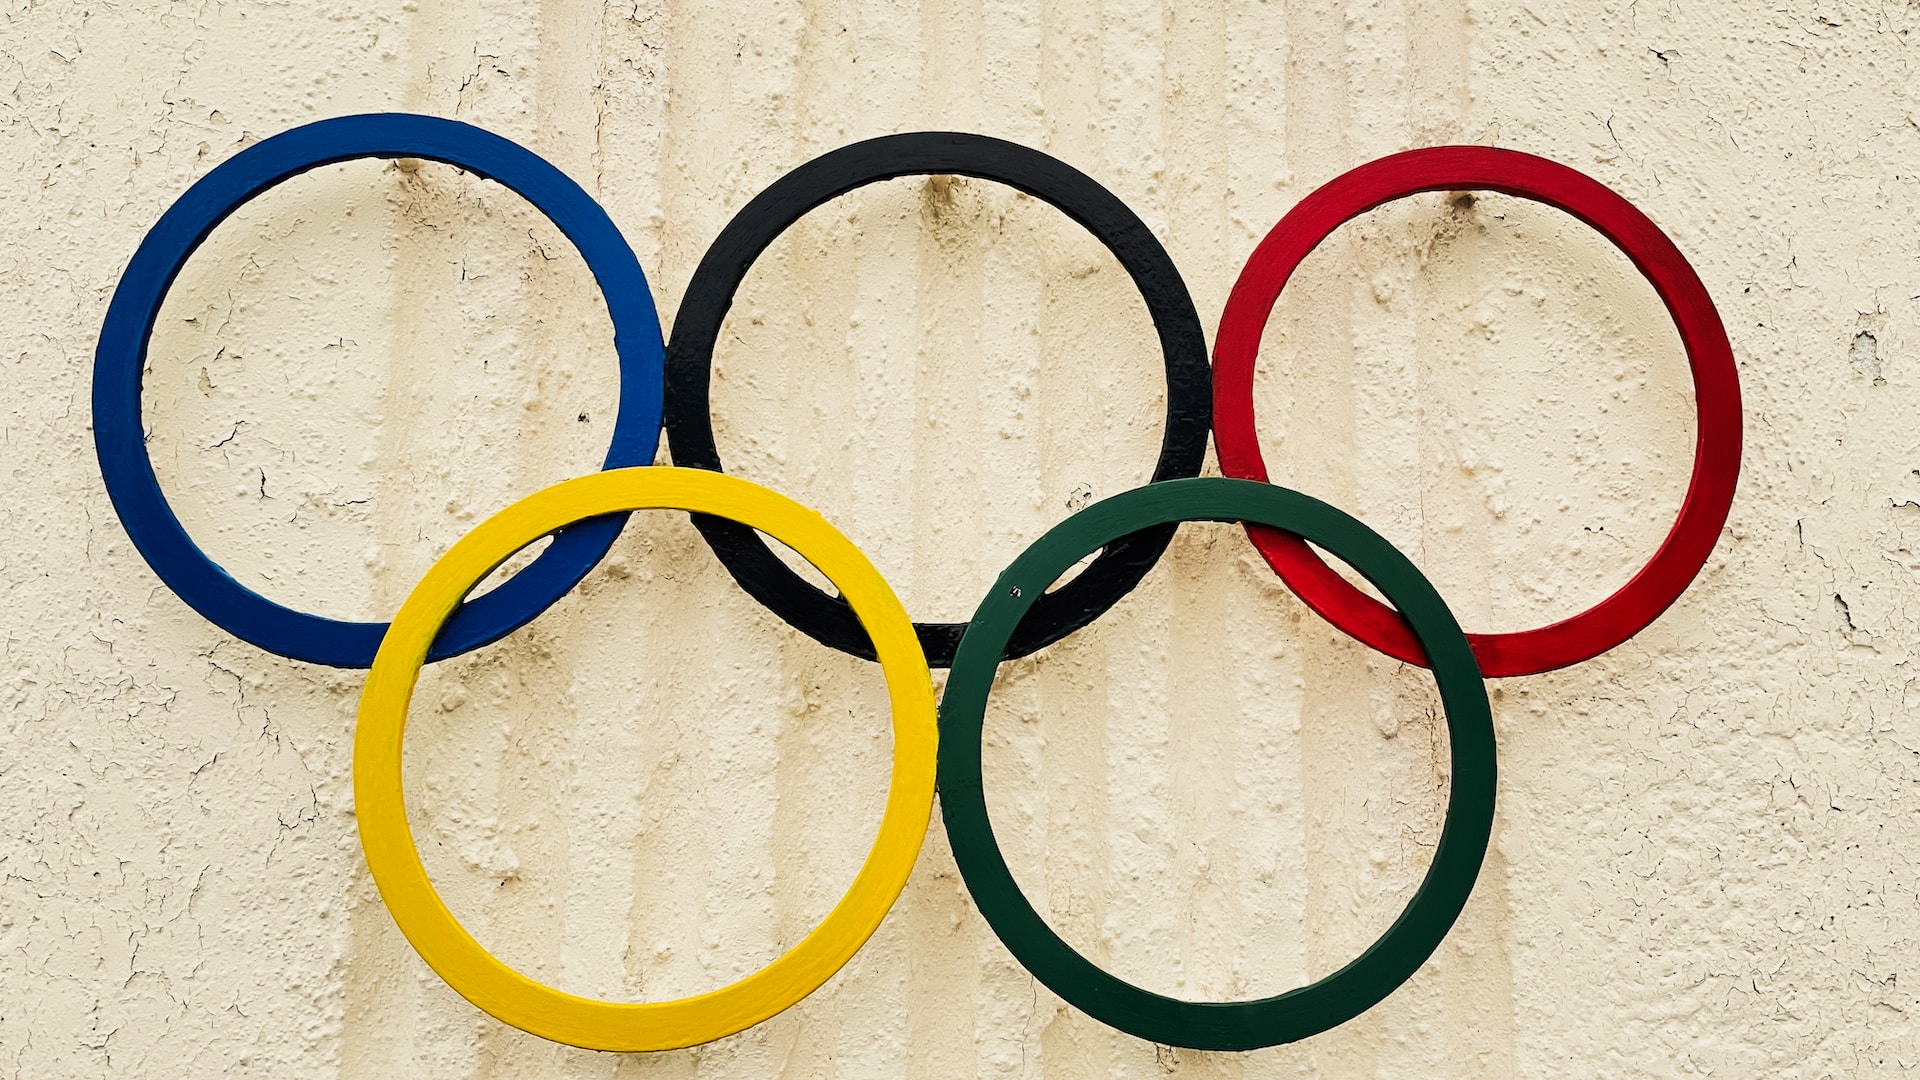 Igrzyska olimpijskie pod nadzorem. Czy Francja zezwoli na masową inwigilację?